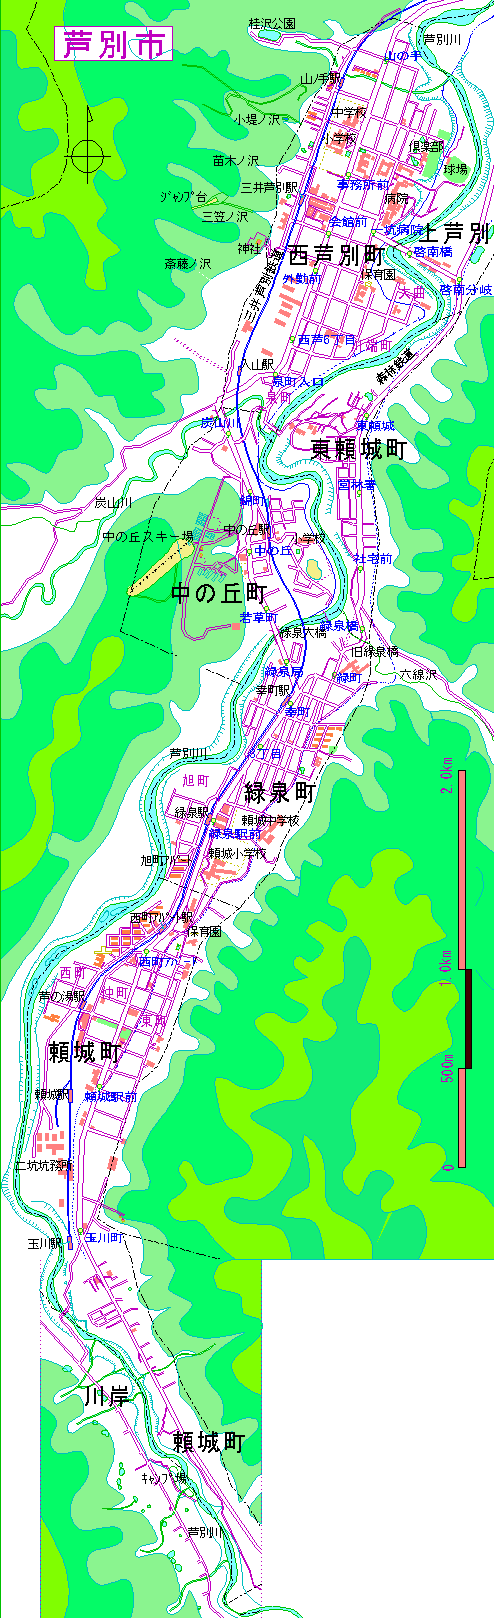 三井地区全図1964